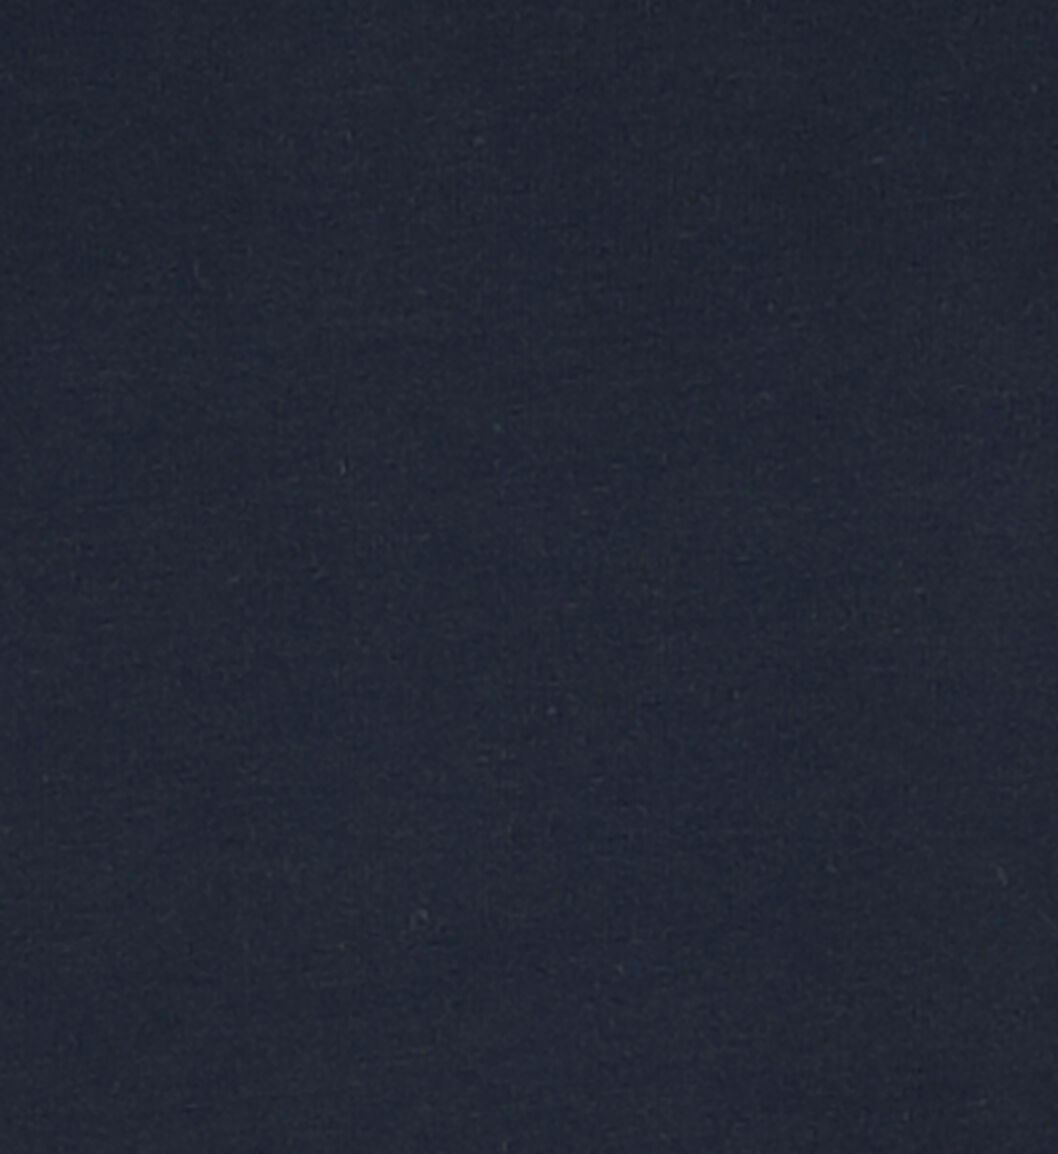 dameshemd donkerblauw donkerblauw - 1000018550 - HEMA